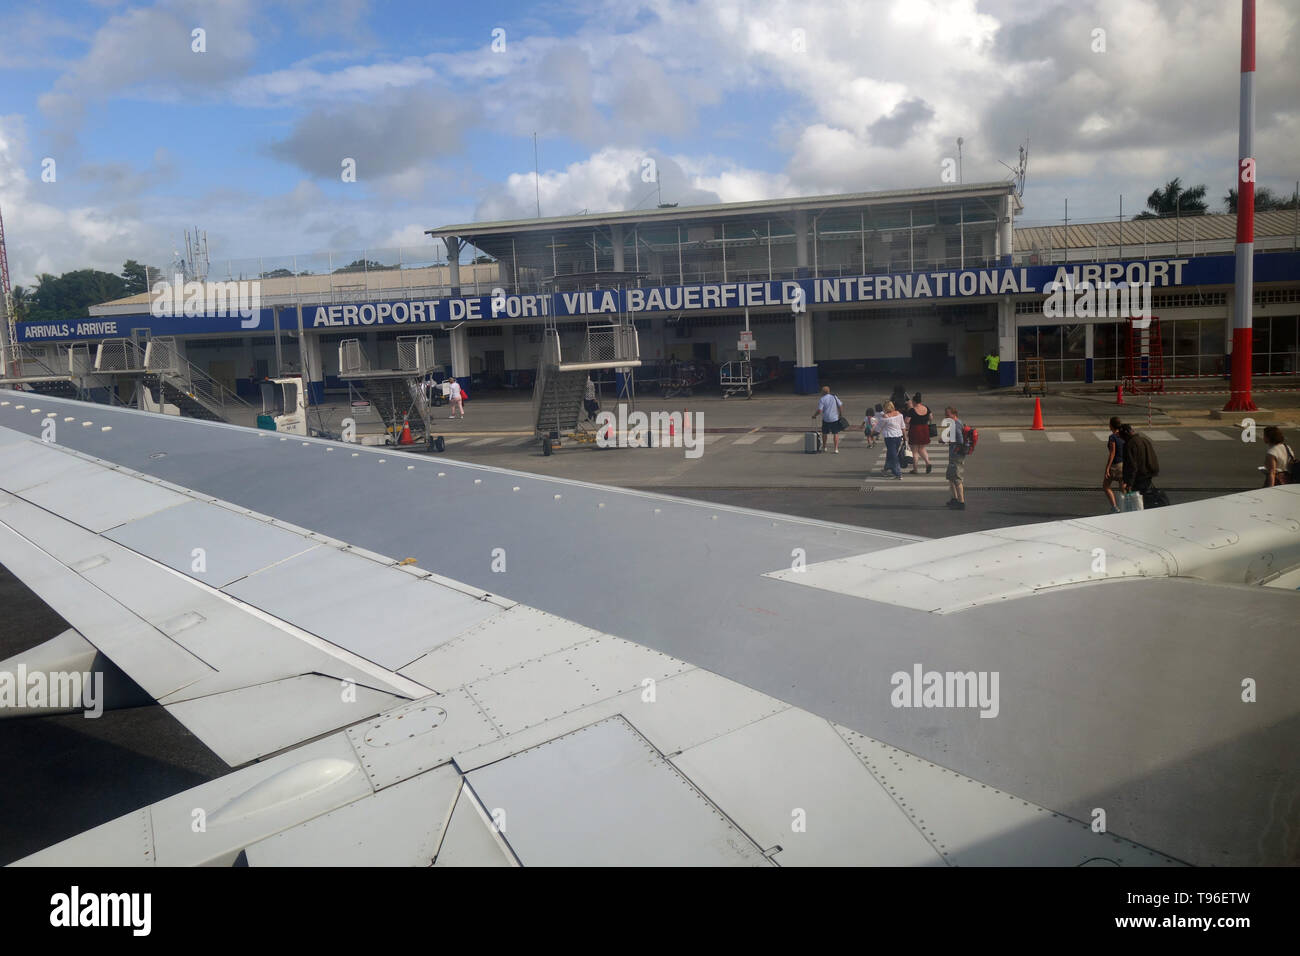 Personnes débarquant d'avion arrivant à l'aéroport international de Bauerfield, Port Vila, Vanuatu Efate,. pas de monsieur ou PR Banque D'Images